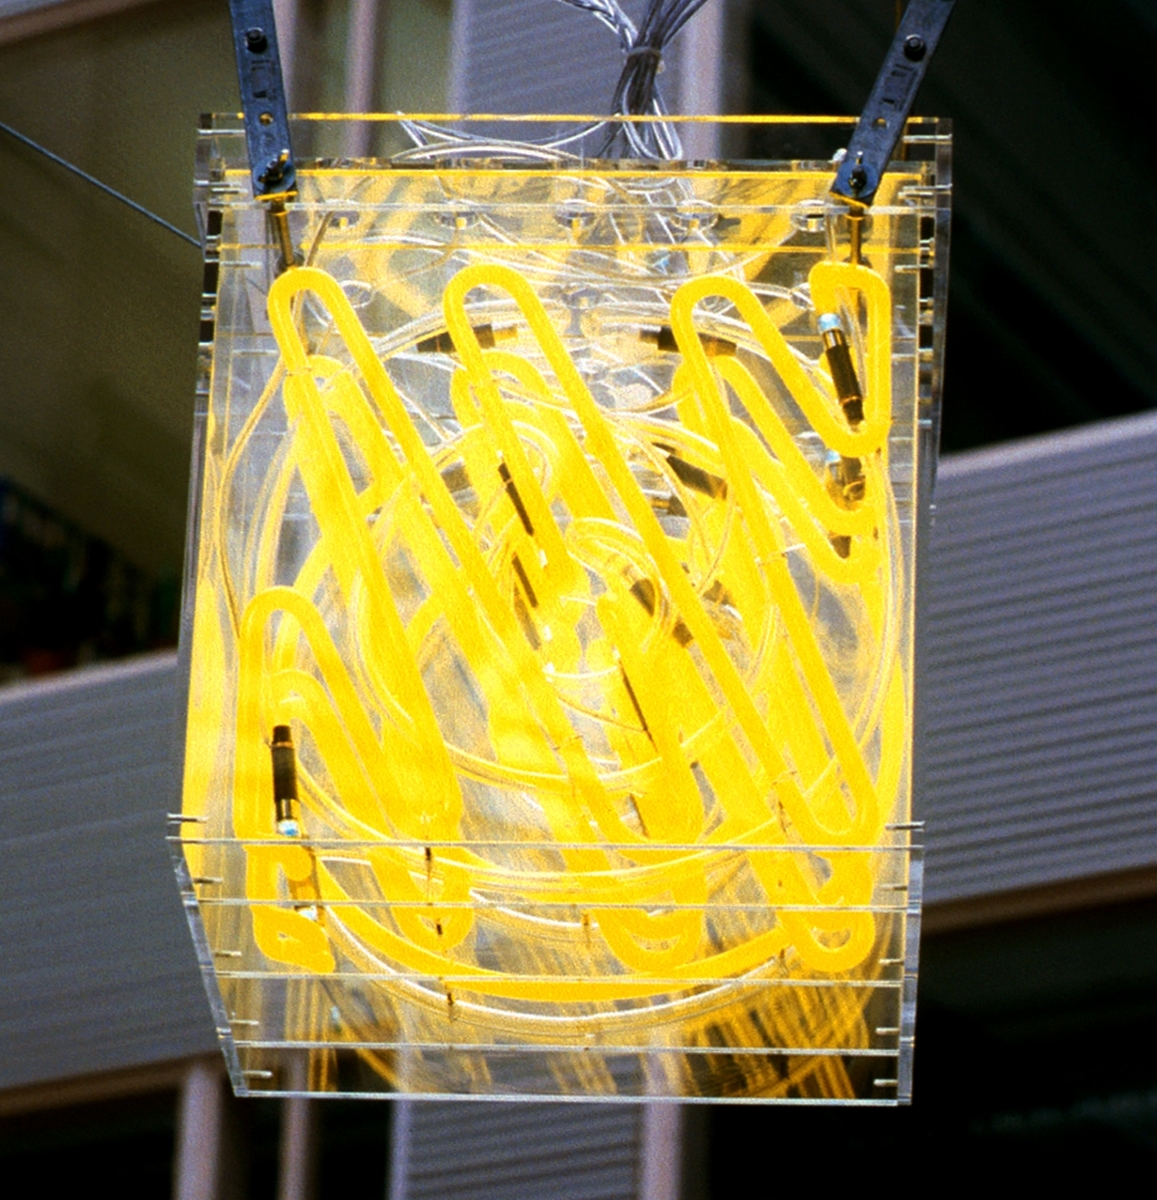 Billedhuggeren Carl Nesjar og komponisten Arne Nordheim har i samarbeid laget installasjonen Gilde på Gløshaugen som består av elektronisk lyd og lys. Kunsten er inspirert av byggets form og aktiviteten i bygget. Carl Nesjars lysinstallasjoner omfatter 7 kuber i plexiglass med 6 neonrør i hver. Nordheims lydinstallasjoner oppleves i samspill med Nesjars pulserende neonkuber og påvirkes av ulike faktorer som temperatur, vindhastighet, dagslys, regn og antall mennesker i bygget. Lydinstallasjonen er delt i ulike sekvenser og fordelingshastigheten av lyder rundt i bygget er bestemt av trafikken forbi tellerne. Jo flere mennesker som passerer tellerne innenfor et visst tidsrom, jo hurtigere forflytter sekvensene seg. Det er definert tre lag med lyd som har en egen romlig distribusjon, og er knyttet til en spesiell fargetone i Nesjars kuber.